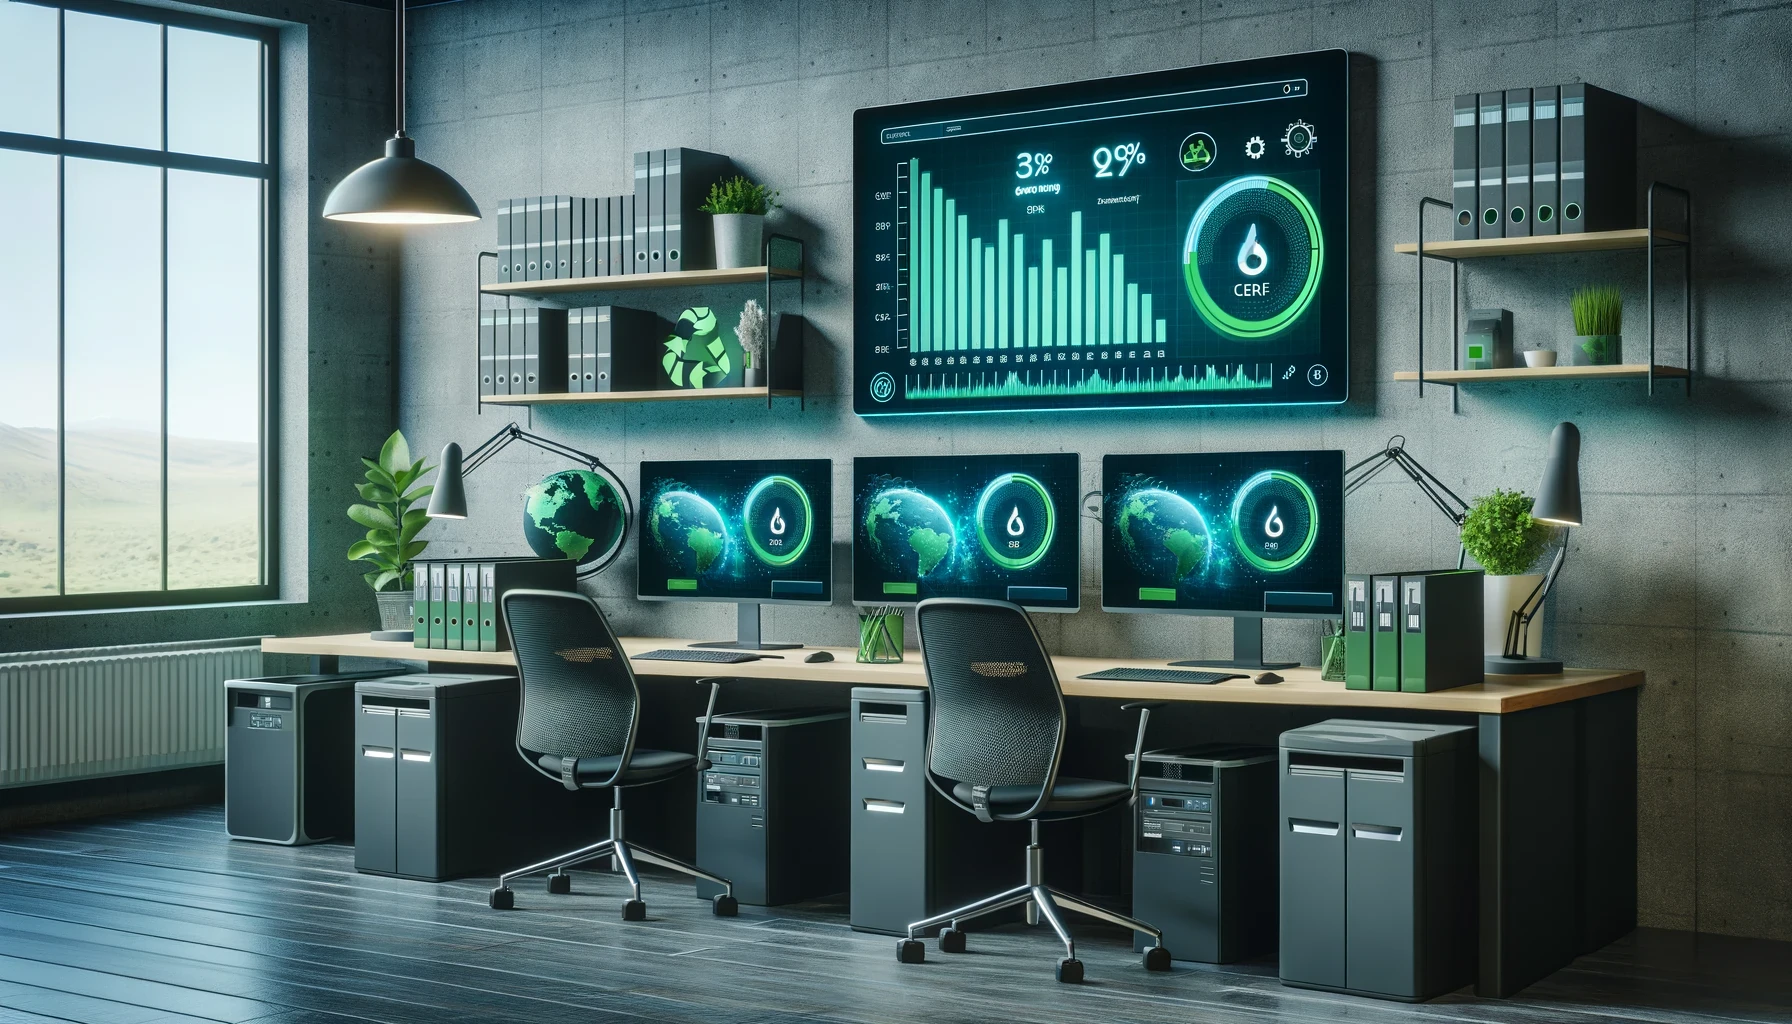 Modernes Büroarbeitsplatz-Setup mit mehreren Monitoren, die Echtzeit-Daten und Weltkarten anzeigen, in einem Raum mit industrieller Ästhetik und Pflanzendekor.